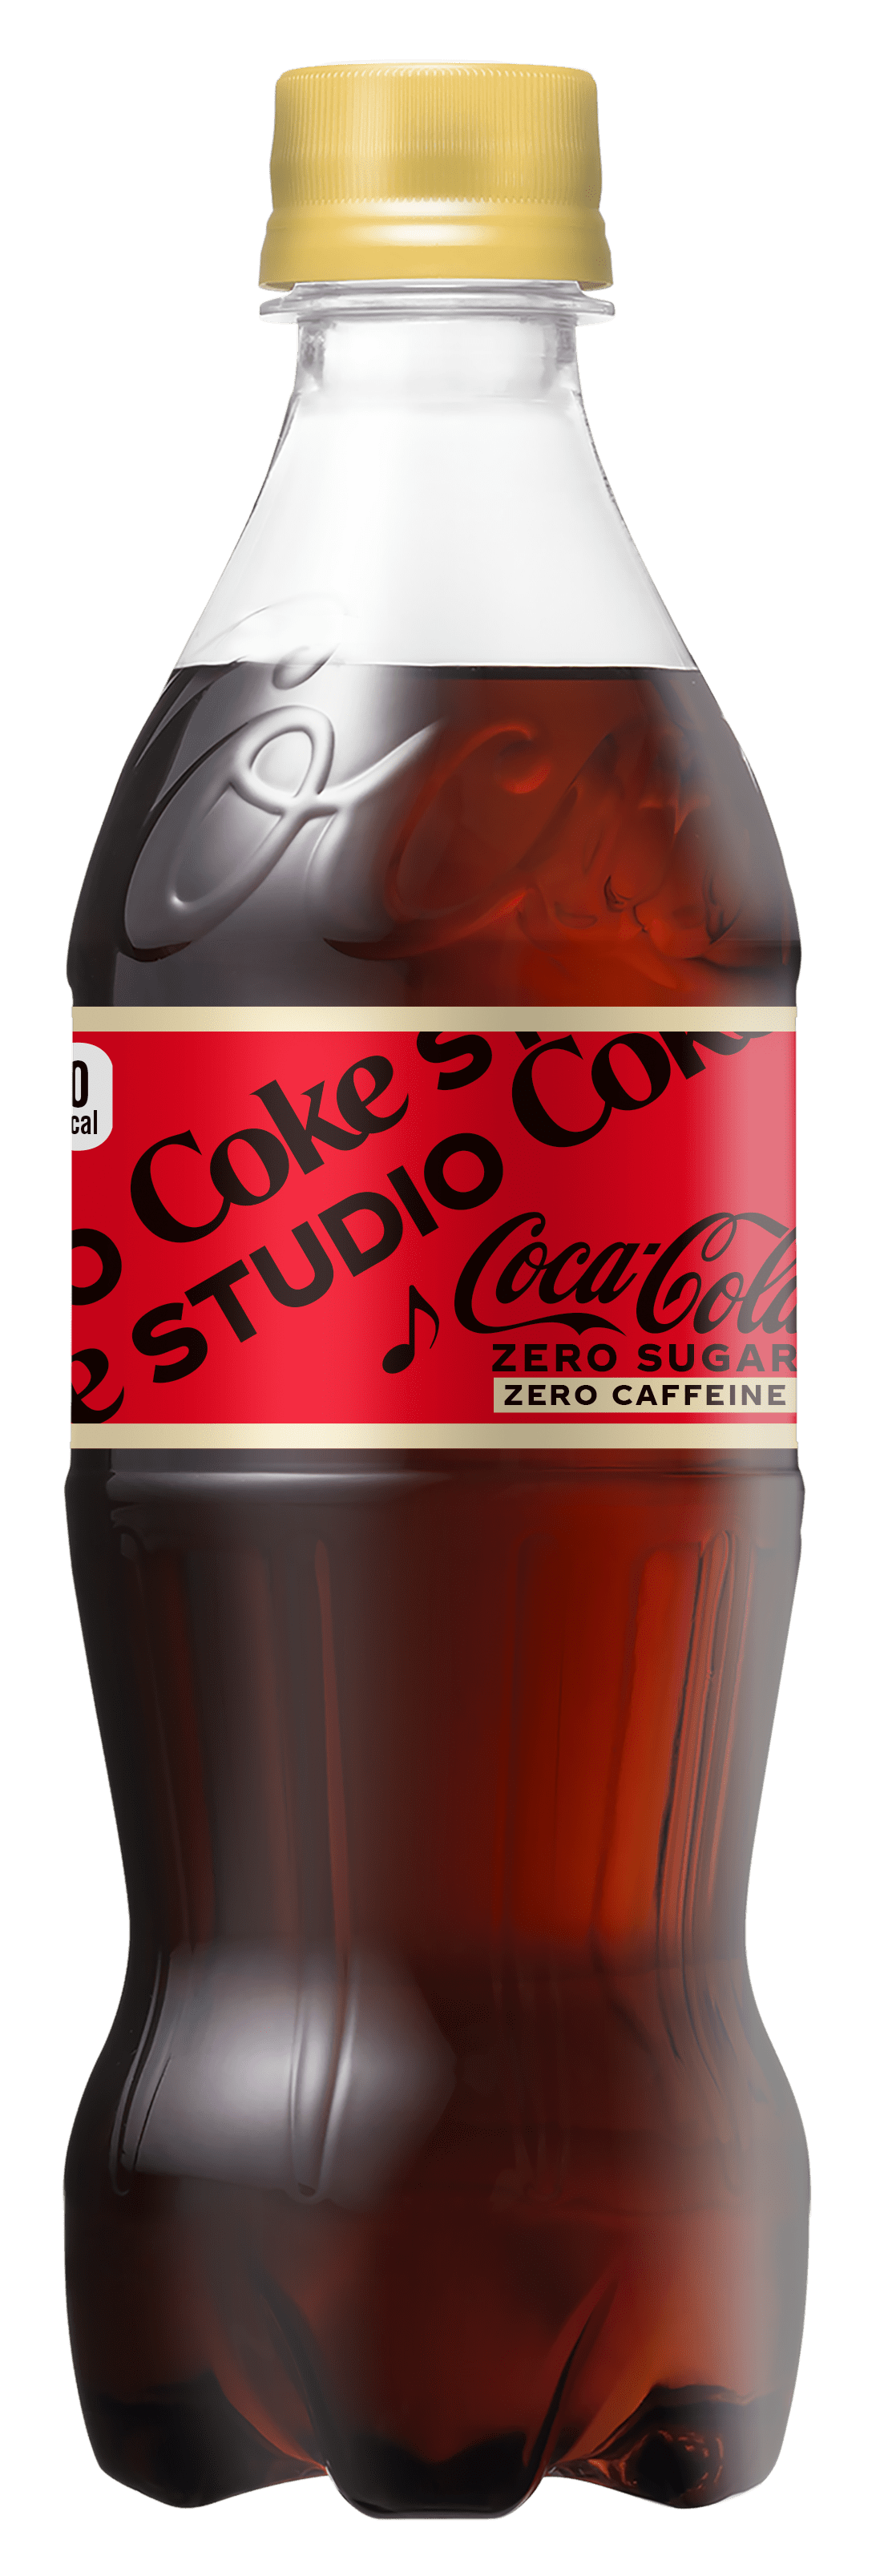 今年の夏はCoke STUDIOで最高の音楽体験を楽しもう 「コカ・コーラ 